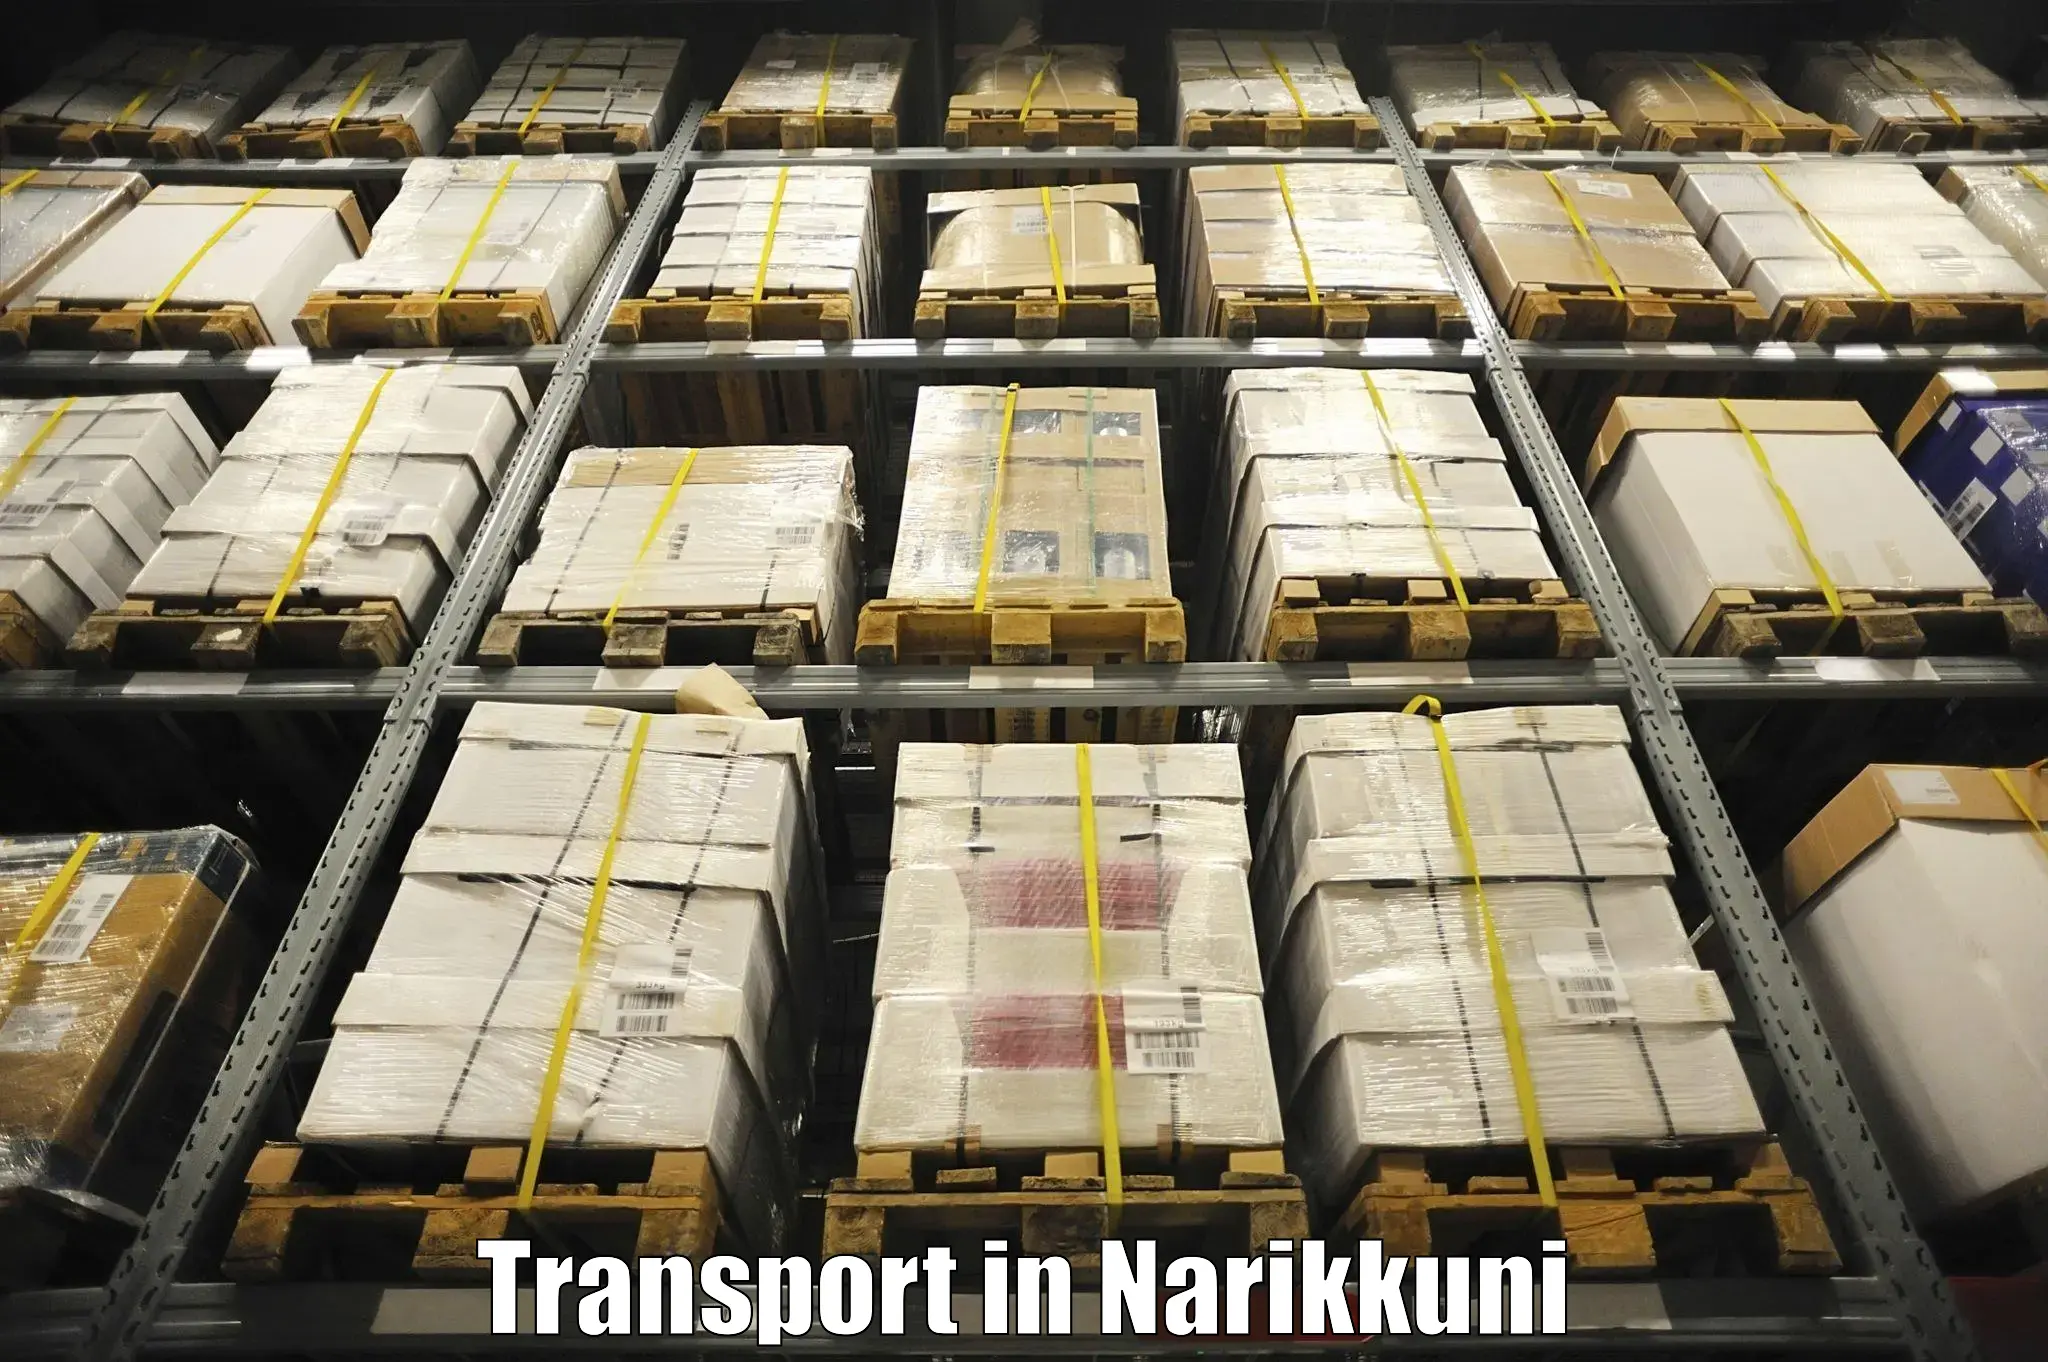 Logistics transportation services in Narikkuni